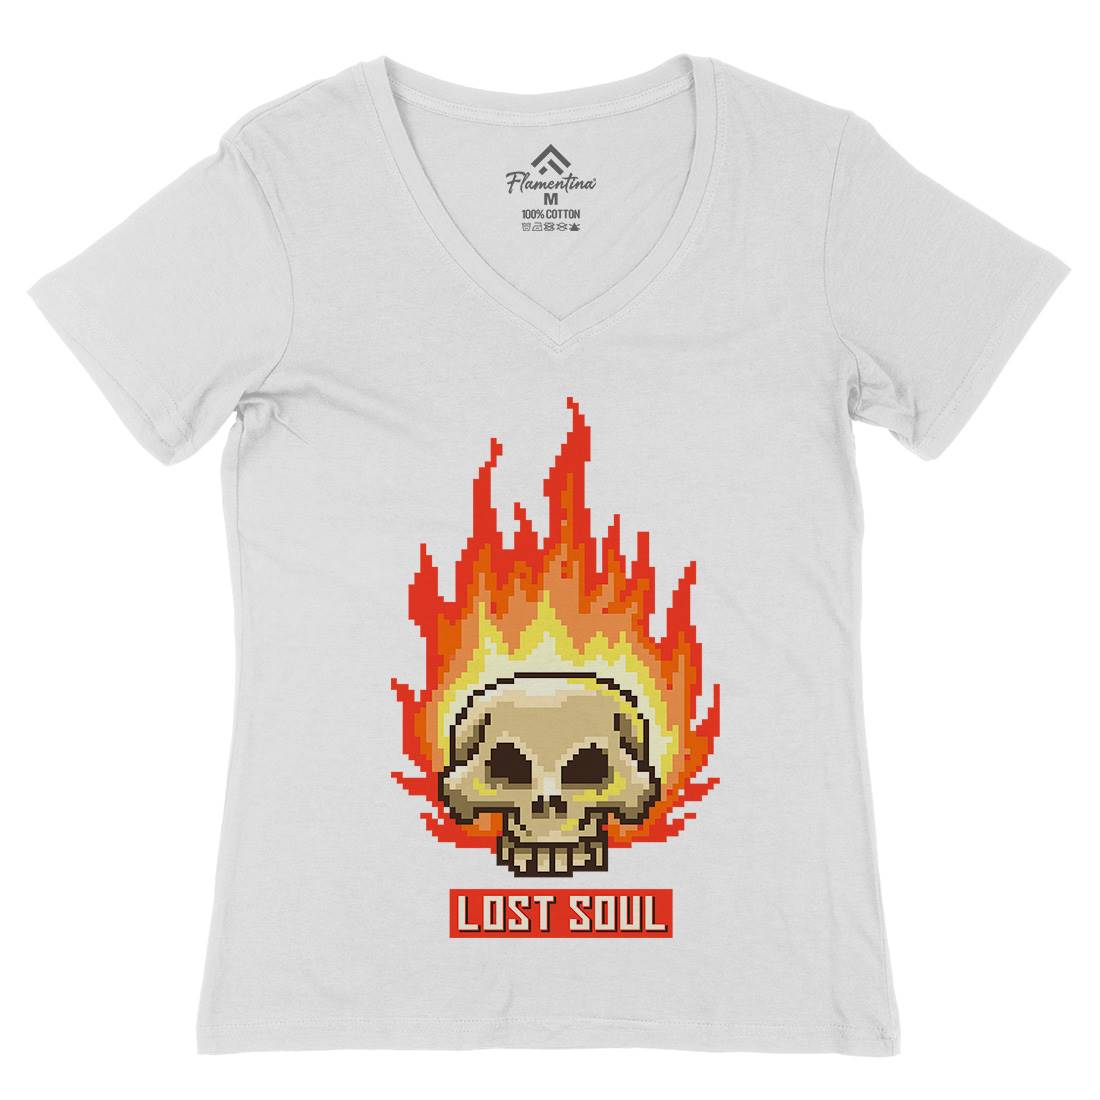 Burning Skull Lost Soul Womens Organic V-Neck T-Shirt Retro B889